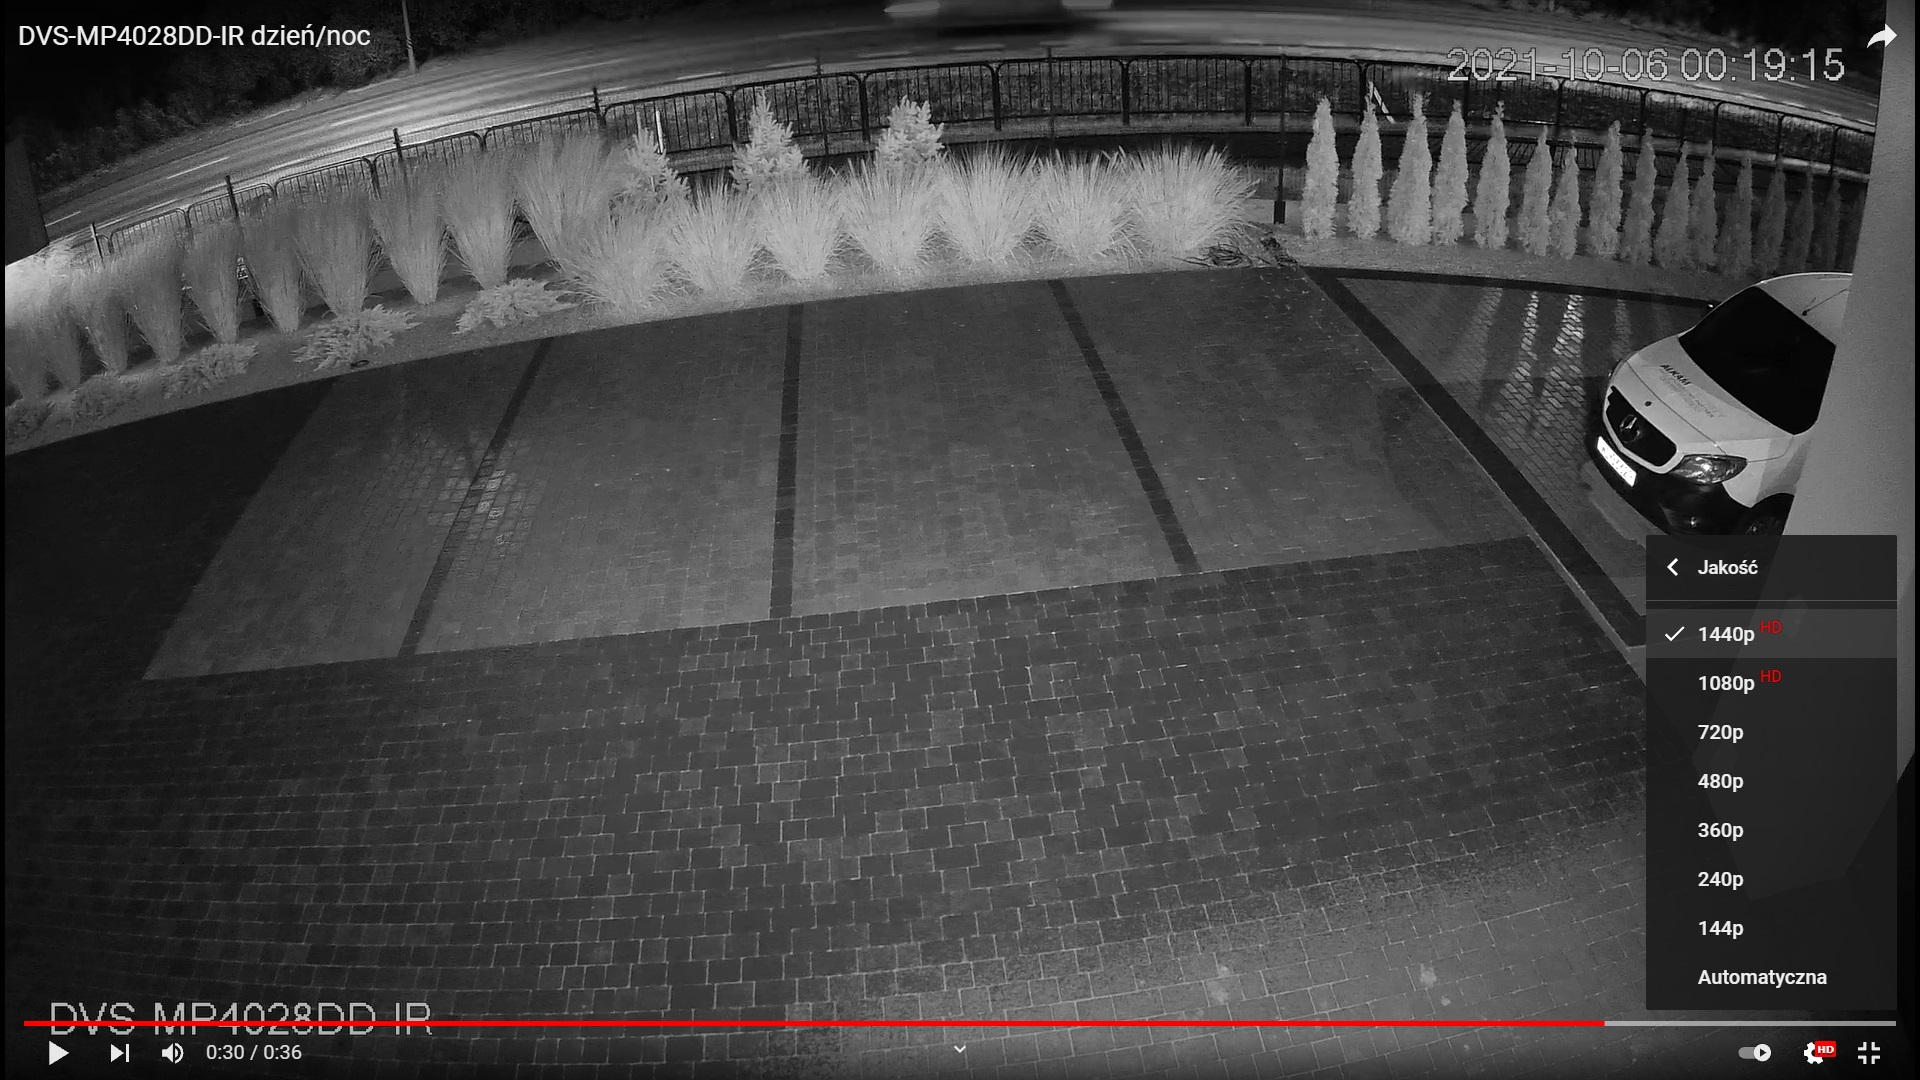 Nagranie z kamery DVS-MP4028DD-IR w nocy